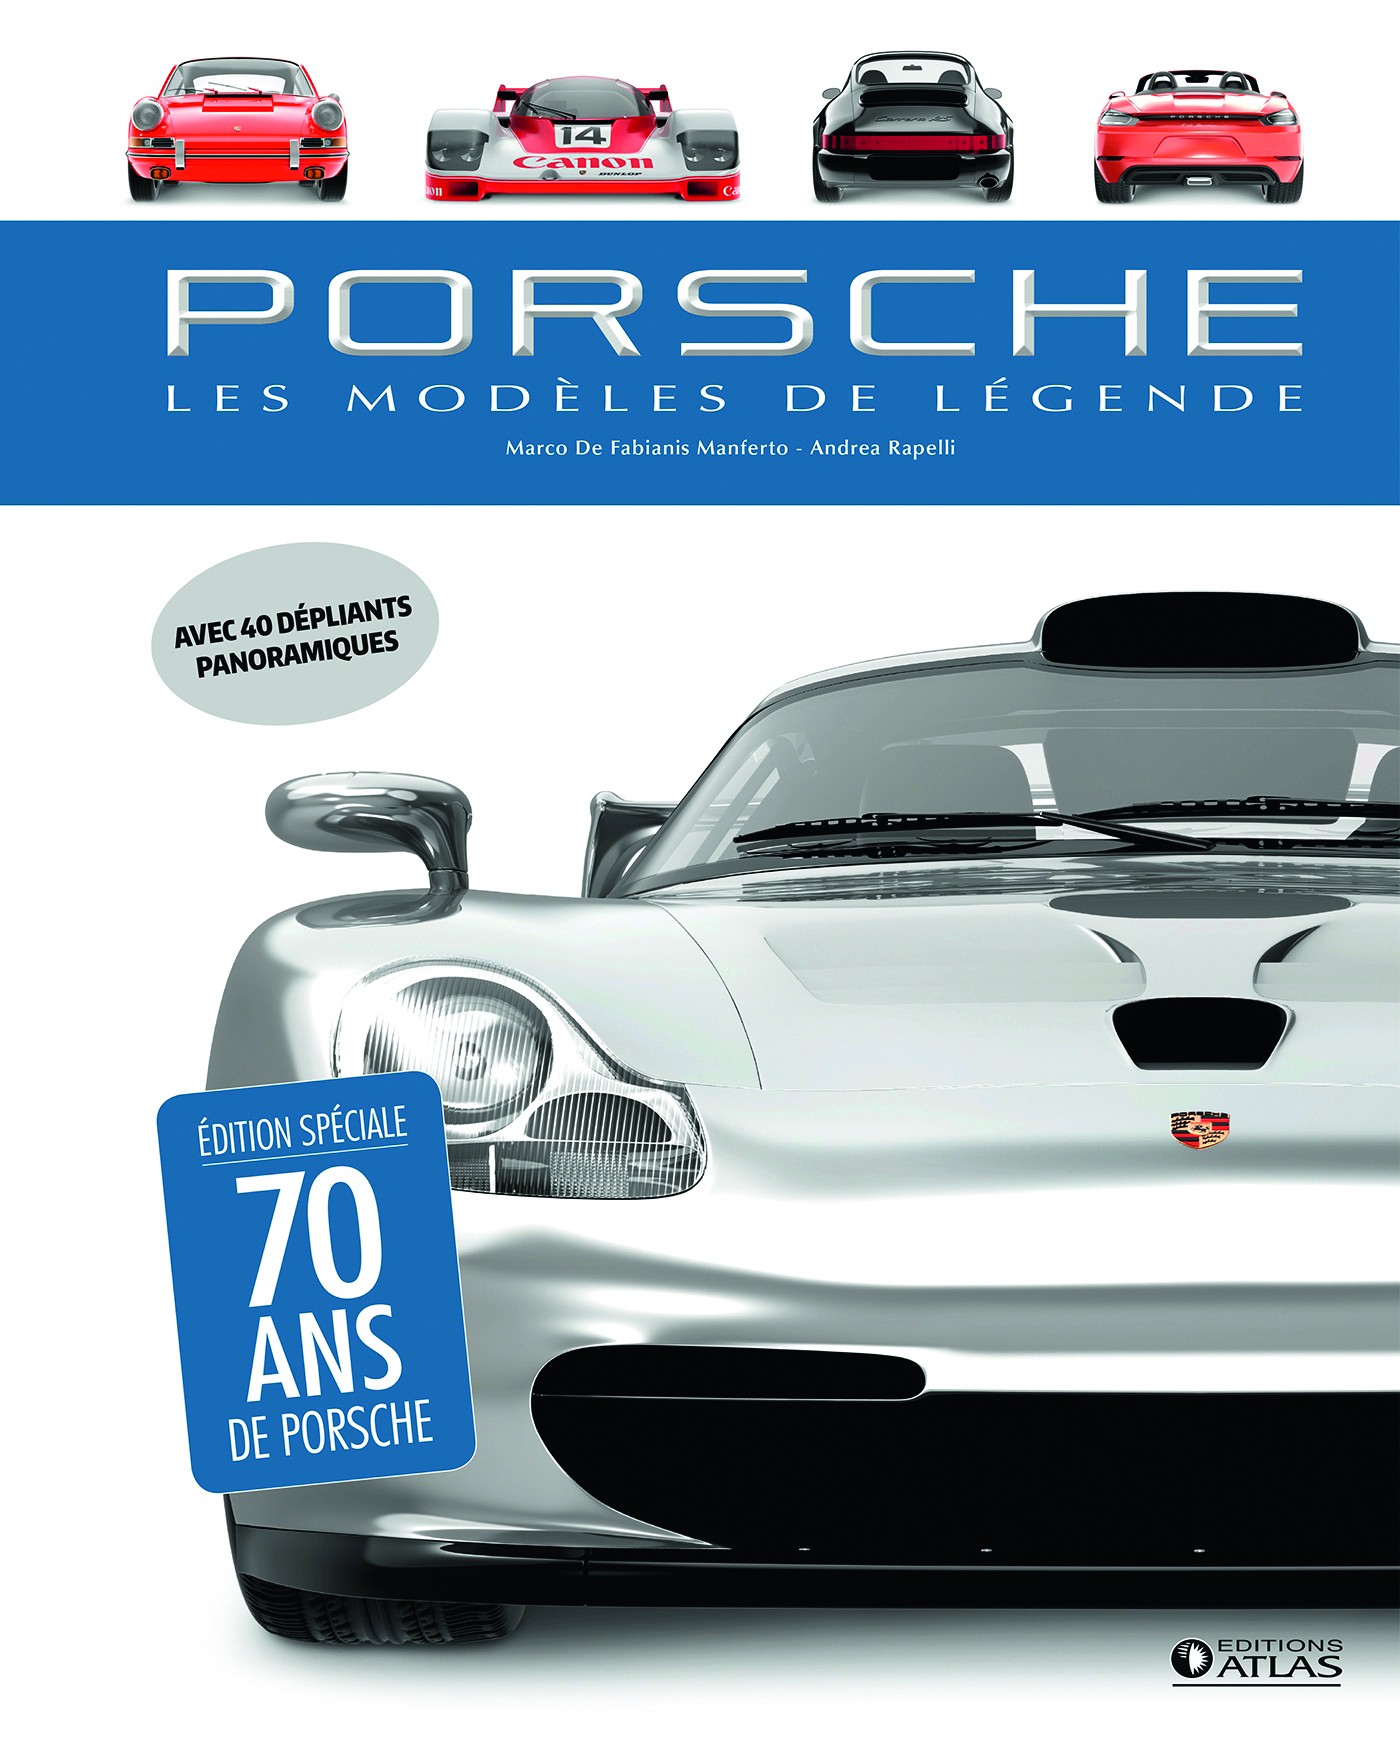 Porsche, les modèles de légende